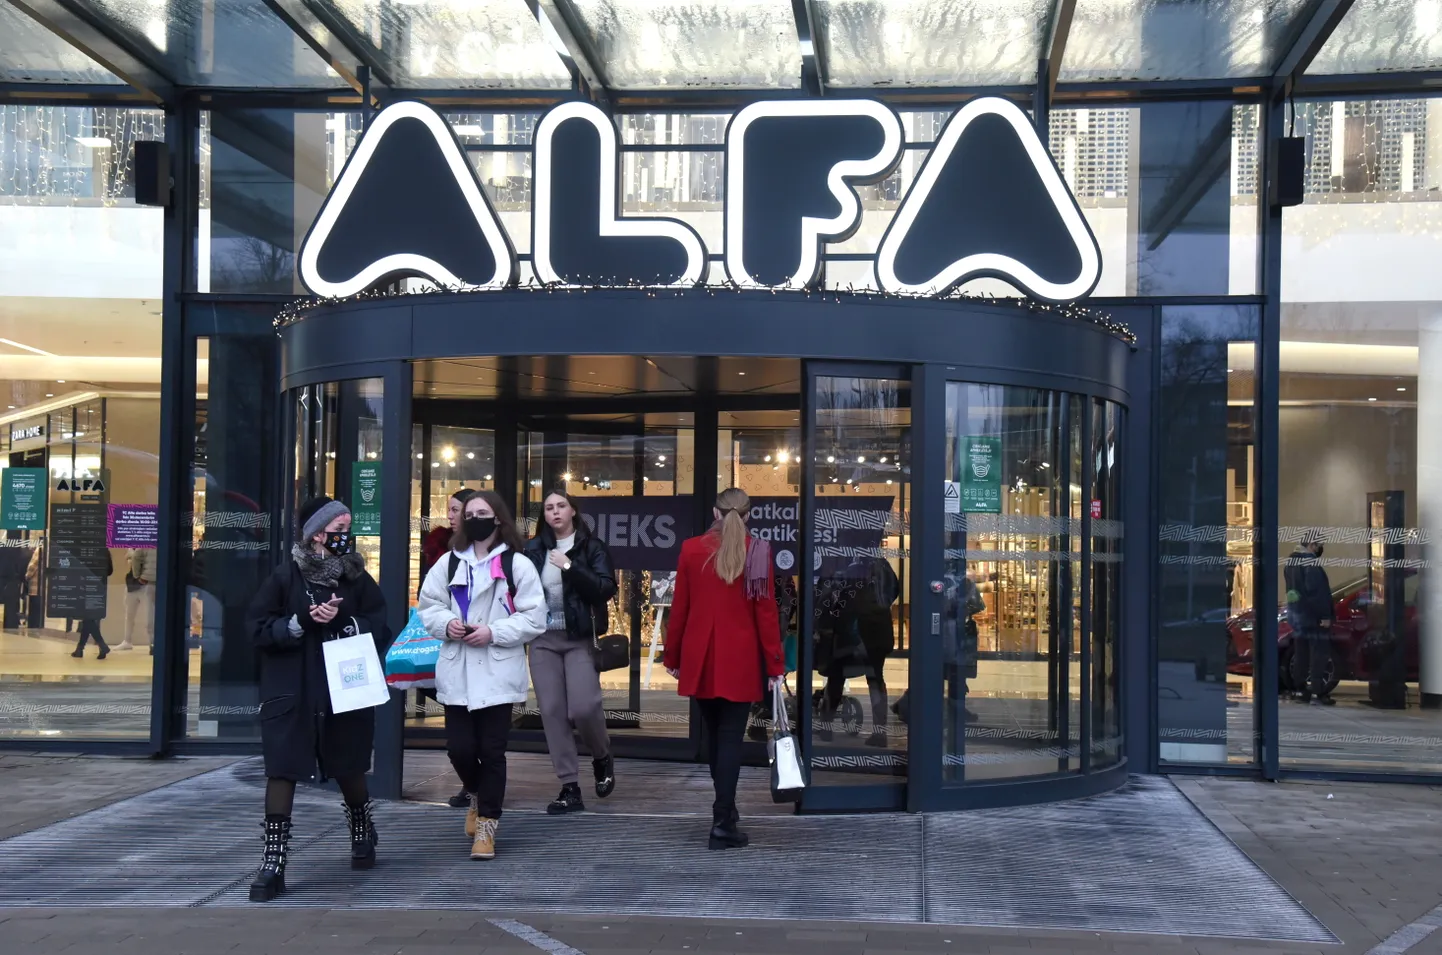 Cilvēki pie tirdzniecības centra "Alfa" pirms jauno tirdzniecības ierobežojumu stāšanās spēkā, kad valstī izsludināta ārkārtējā situācija Covid-19 pandēmijas laikā.